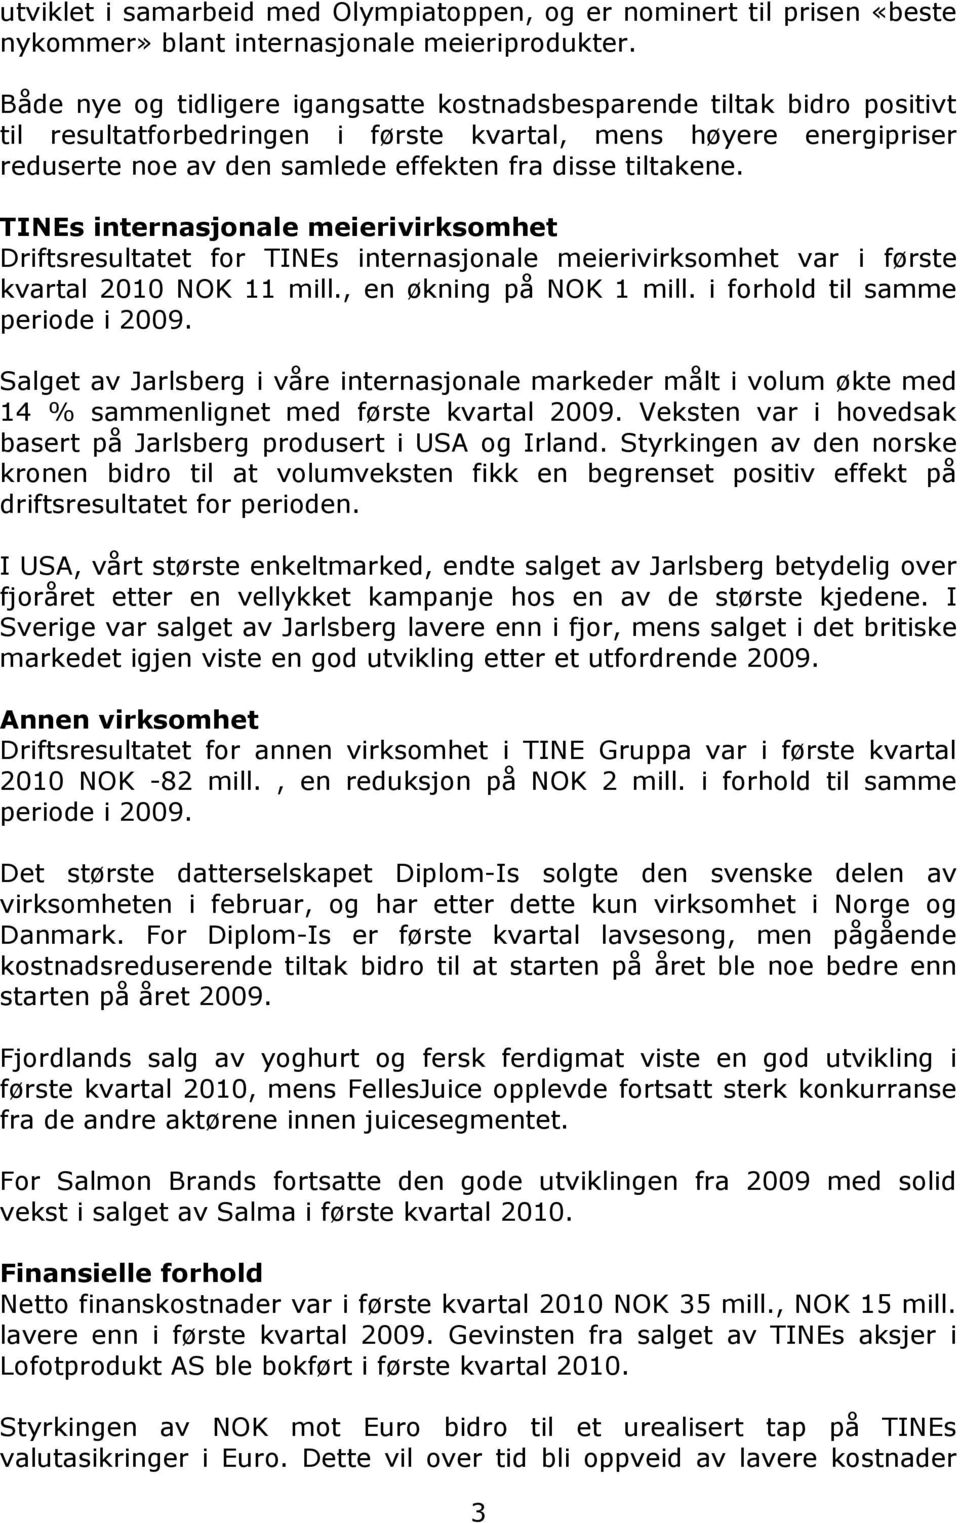 TINEs internasjonale meierivirksomhet Driftsresultatet for TINEs internasjonale meierivirksomhet var i første kvartal 2010 NOK 11 mill., en økning på NOK 1 mill. i forhold til samme periode i 2009.